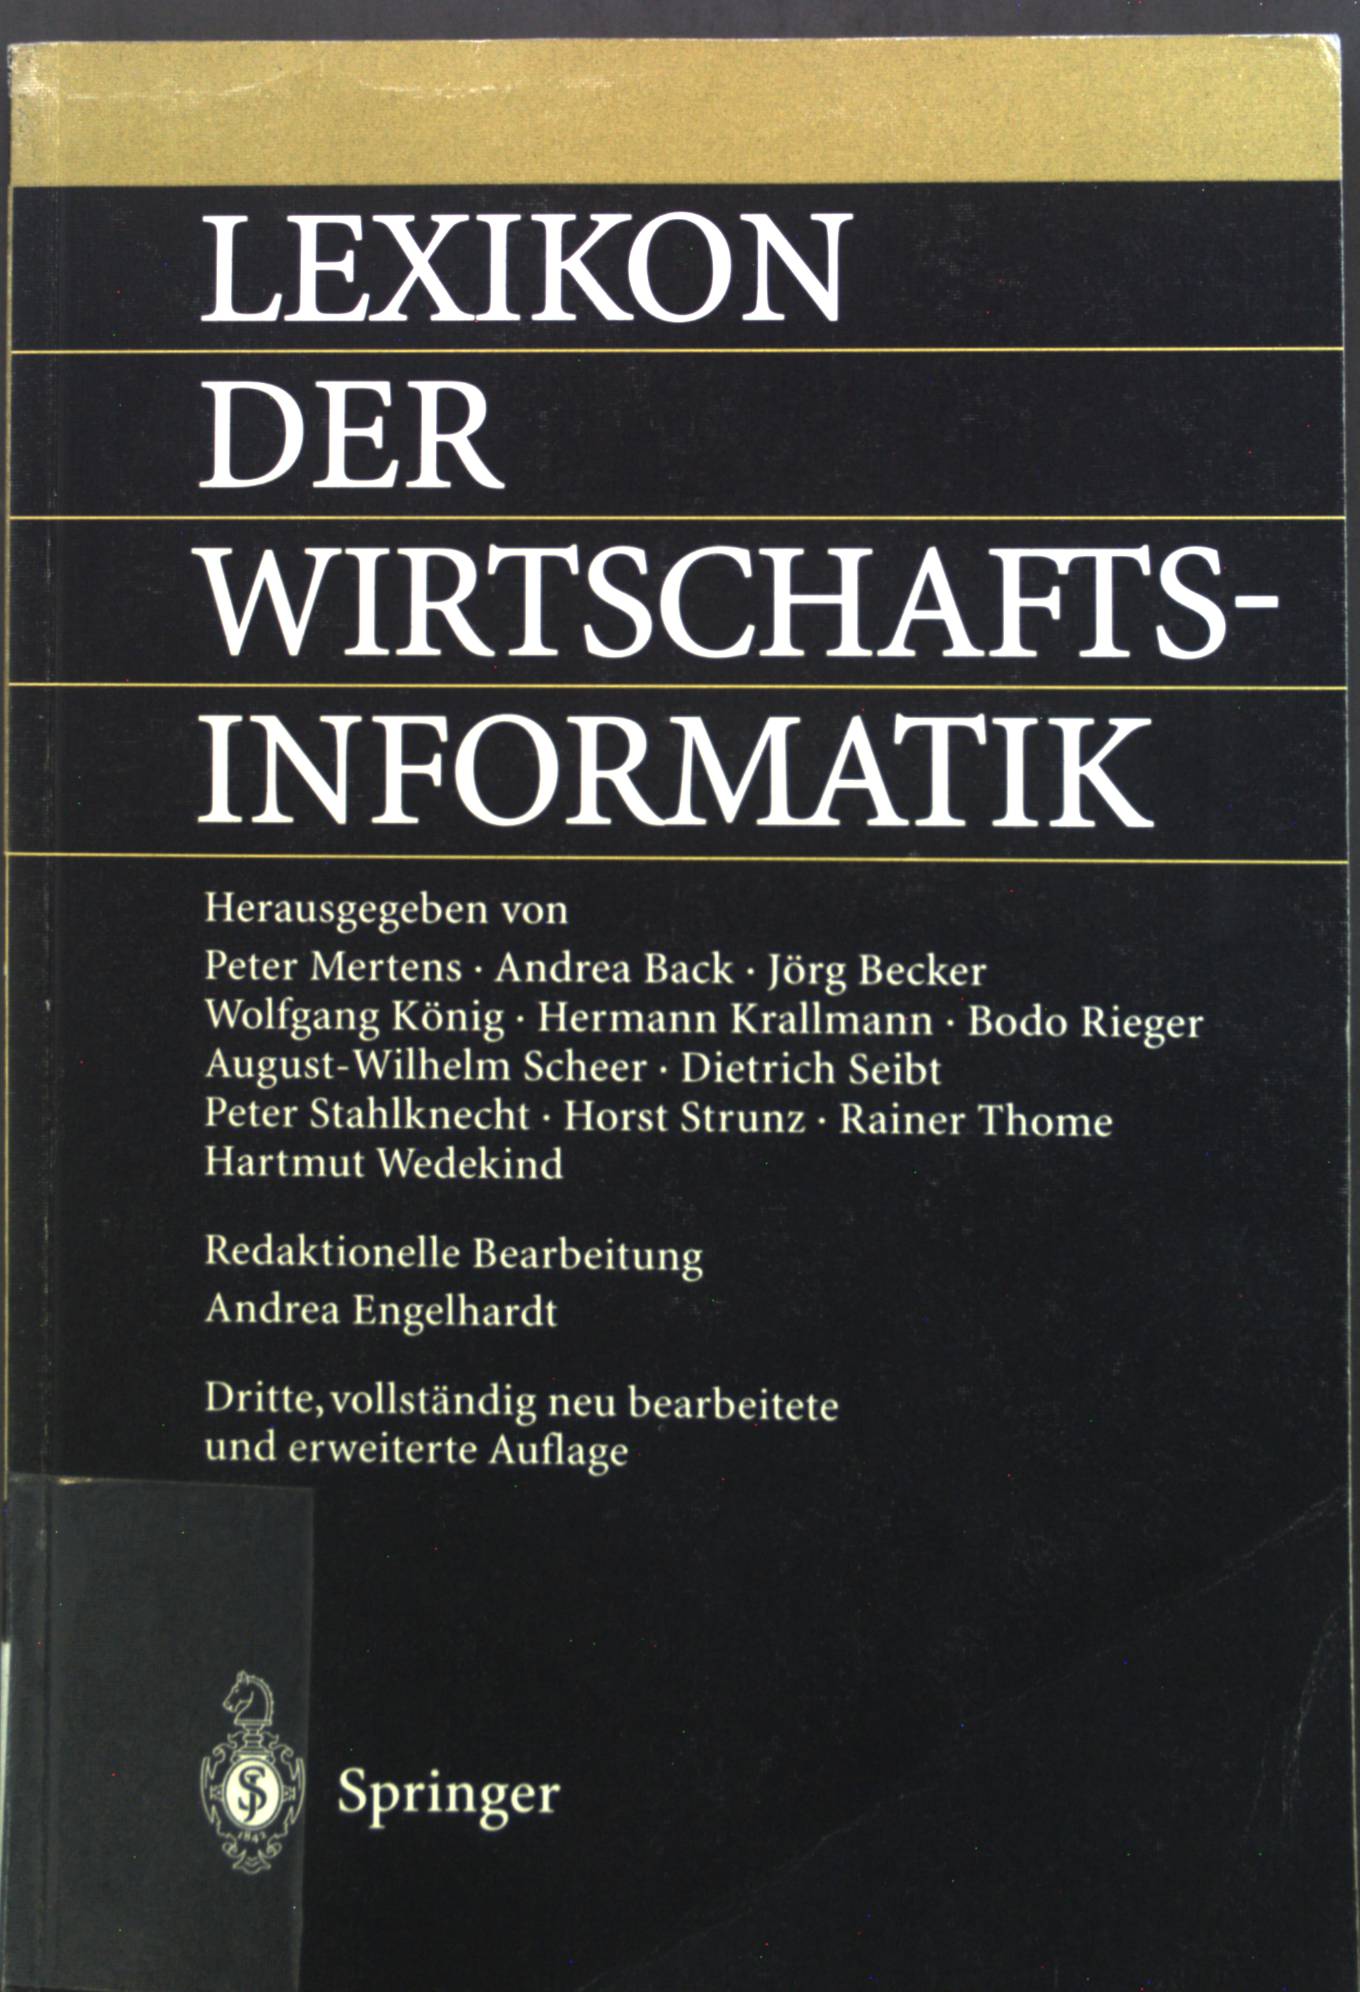 Lexikon der Wirtschaftsinformatik. - Mertens, Peter, Andrea Back Jörg Becker u. a.